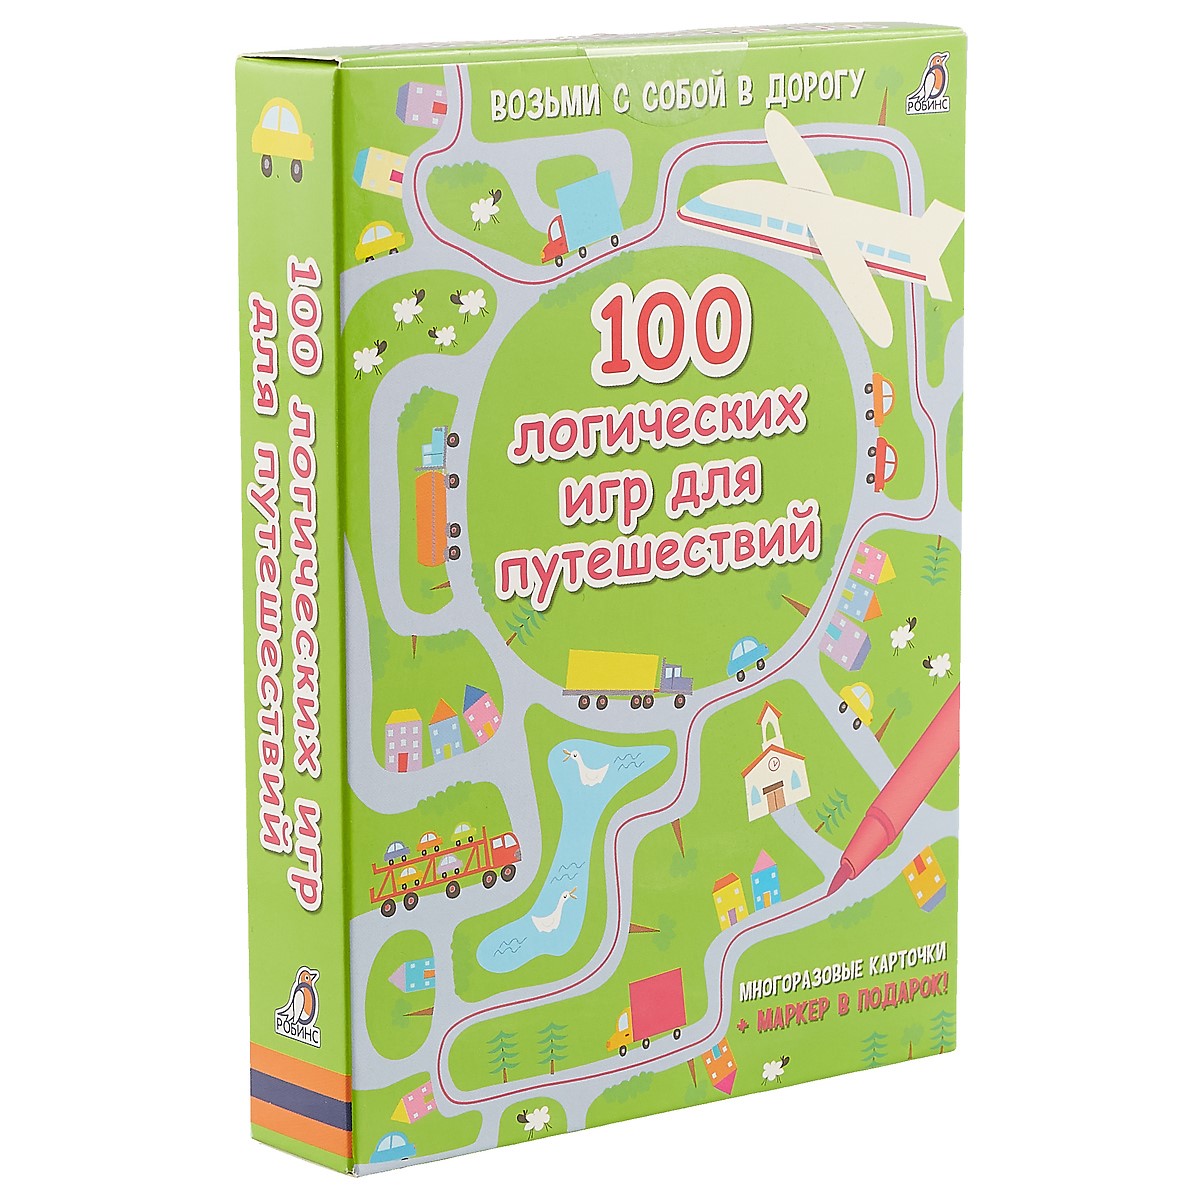 Асборн - карточки. 100 логических игр для путешествий асборн карточки 100 увлекательных игр для путешествий